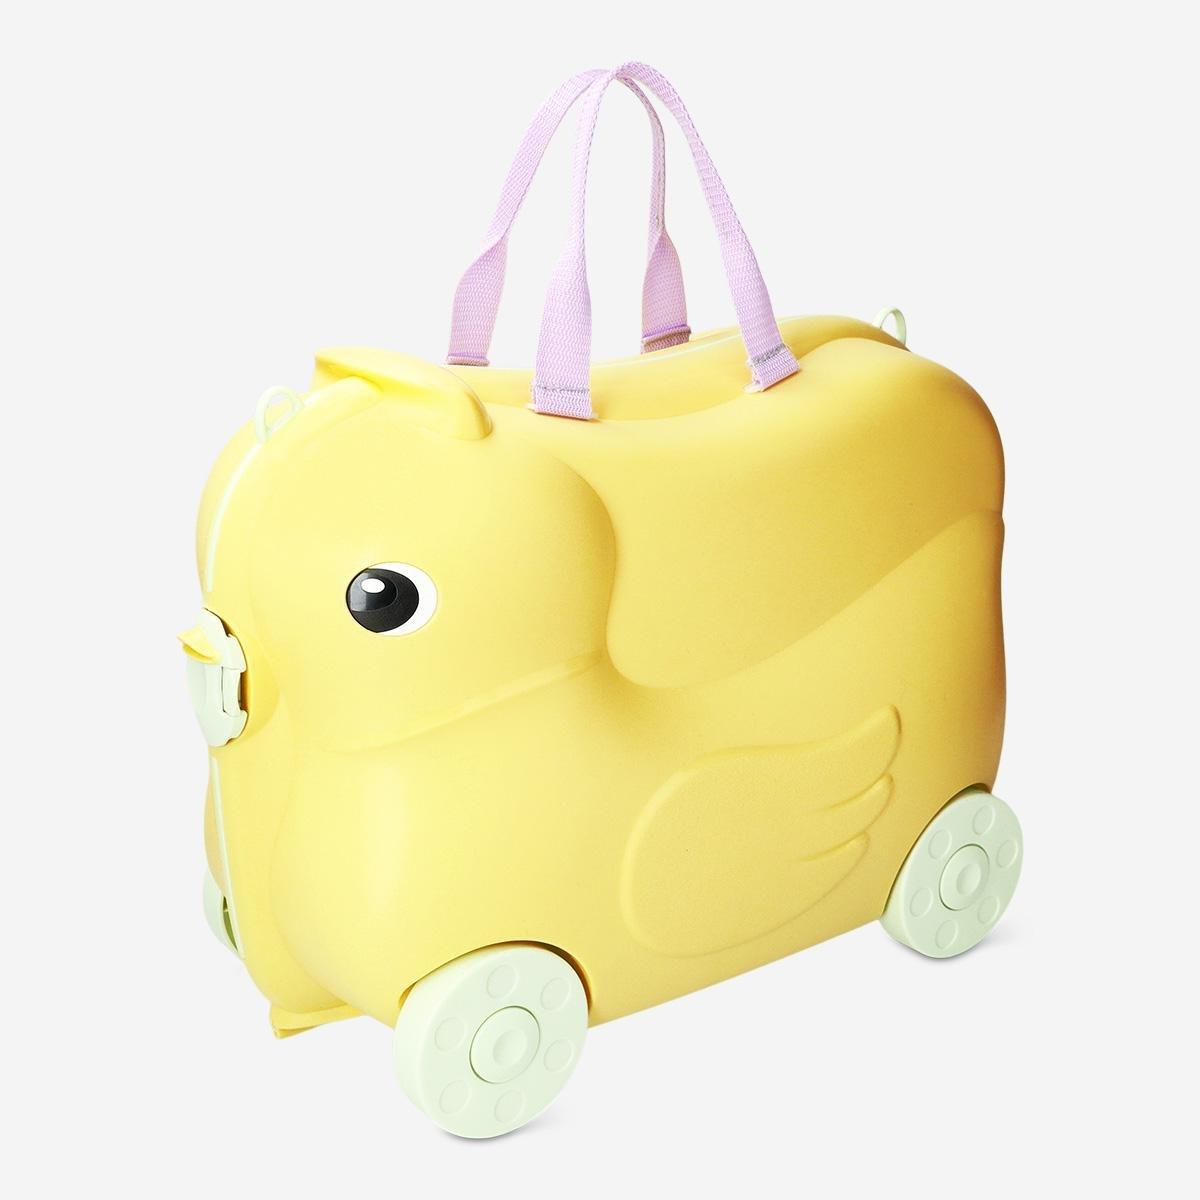 Yellow children luggage